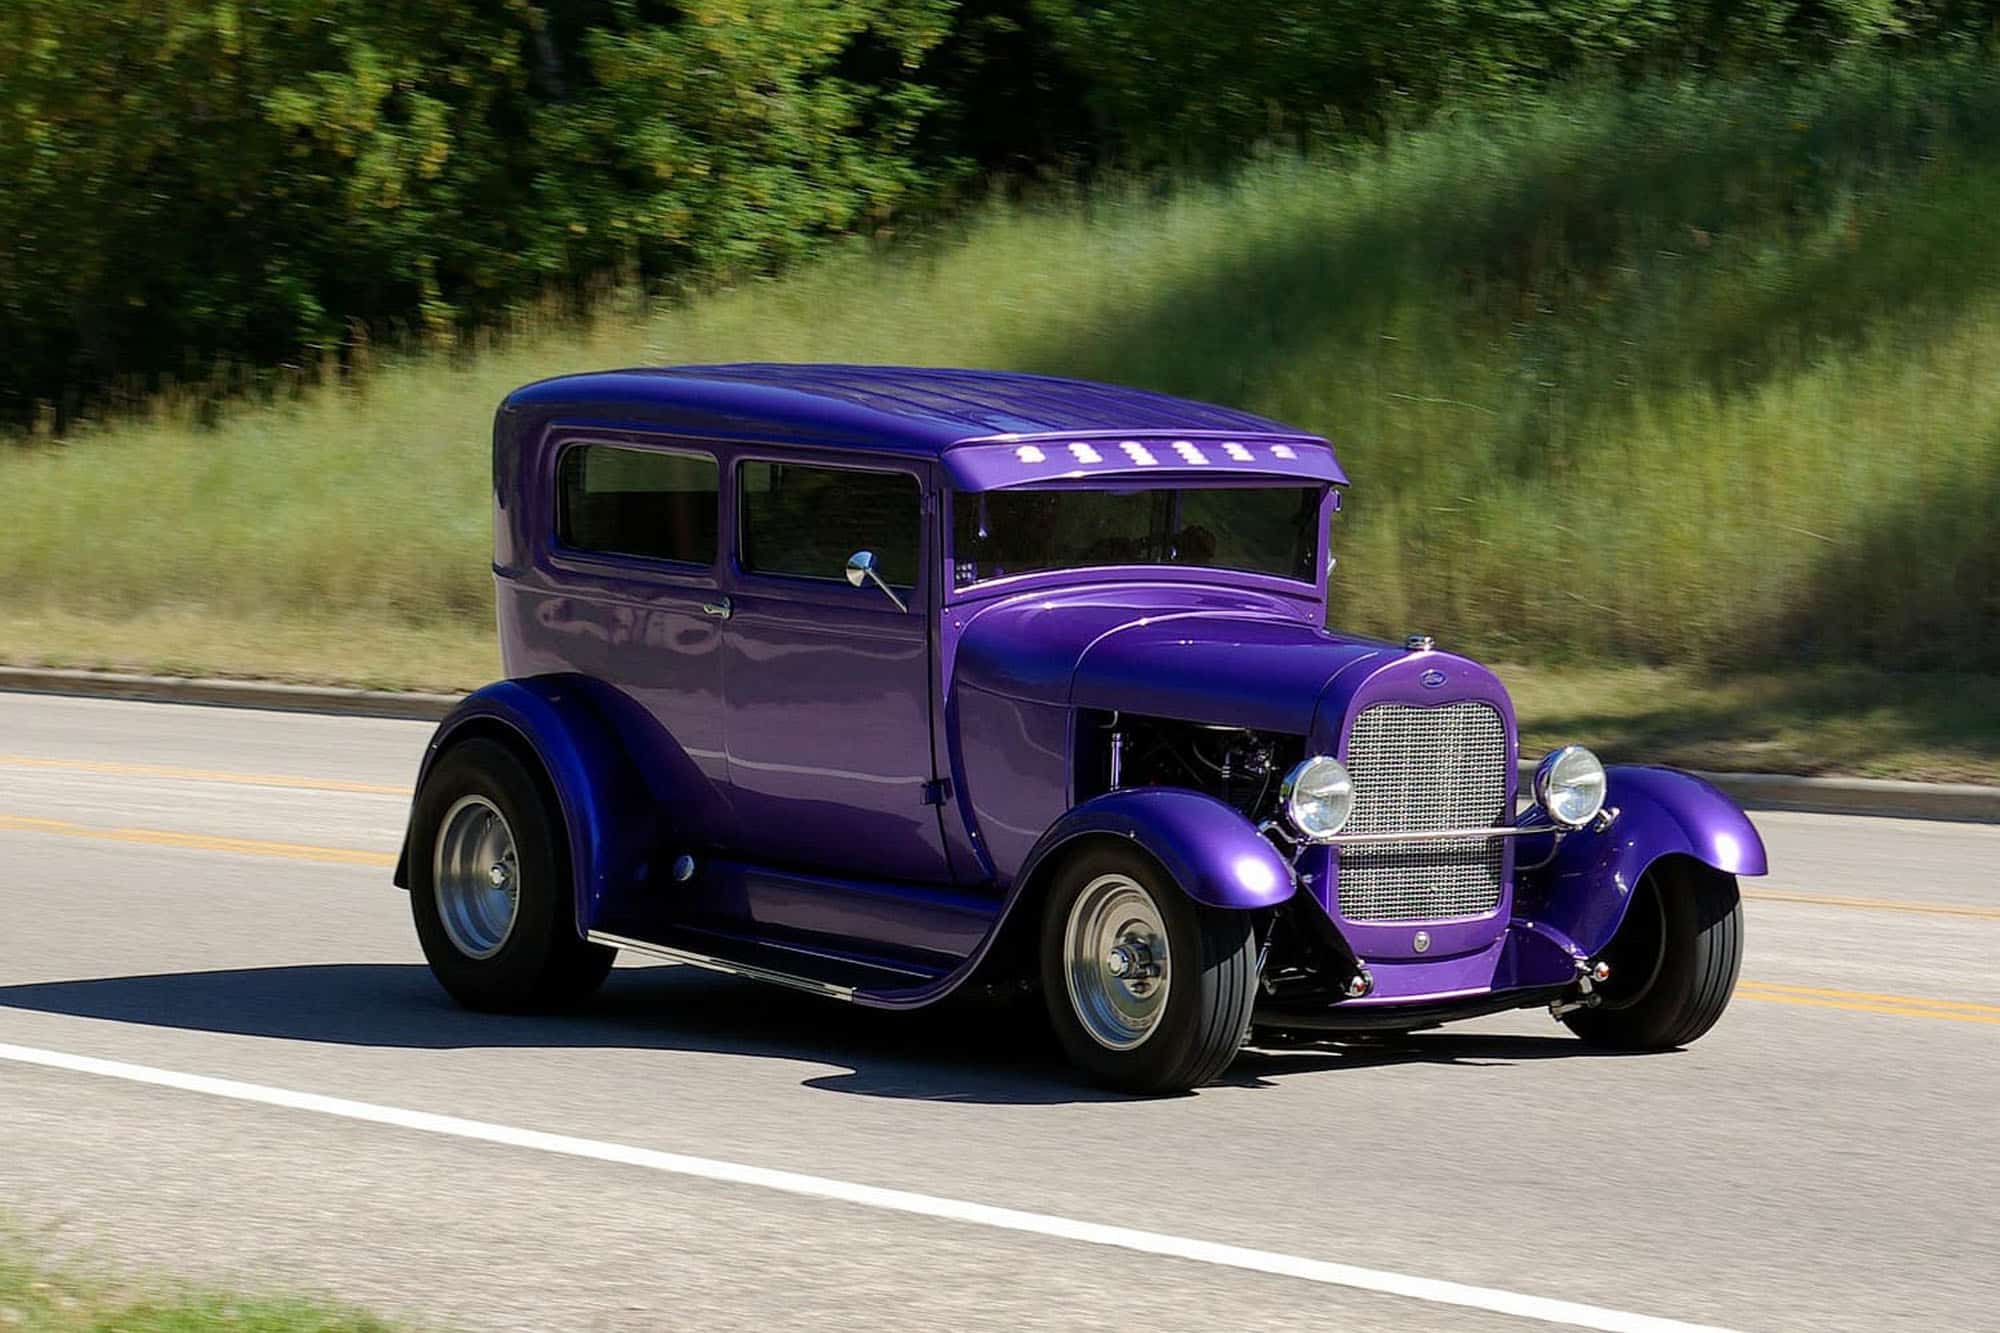 Hot Rod violet en route